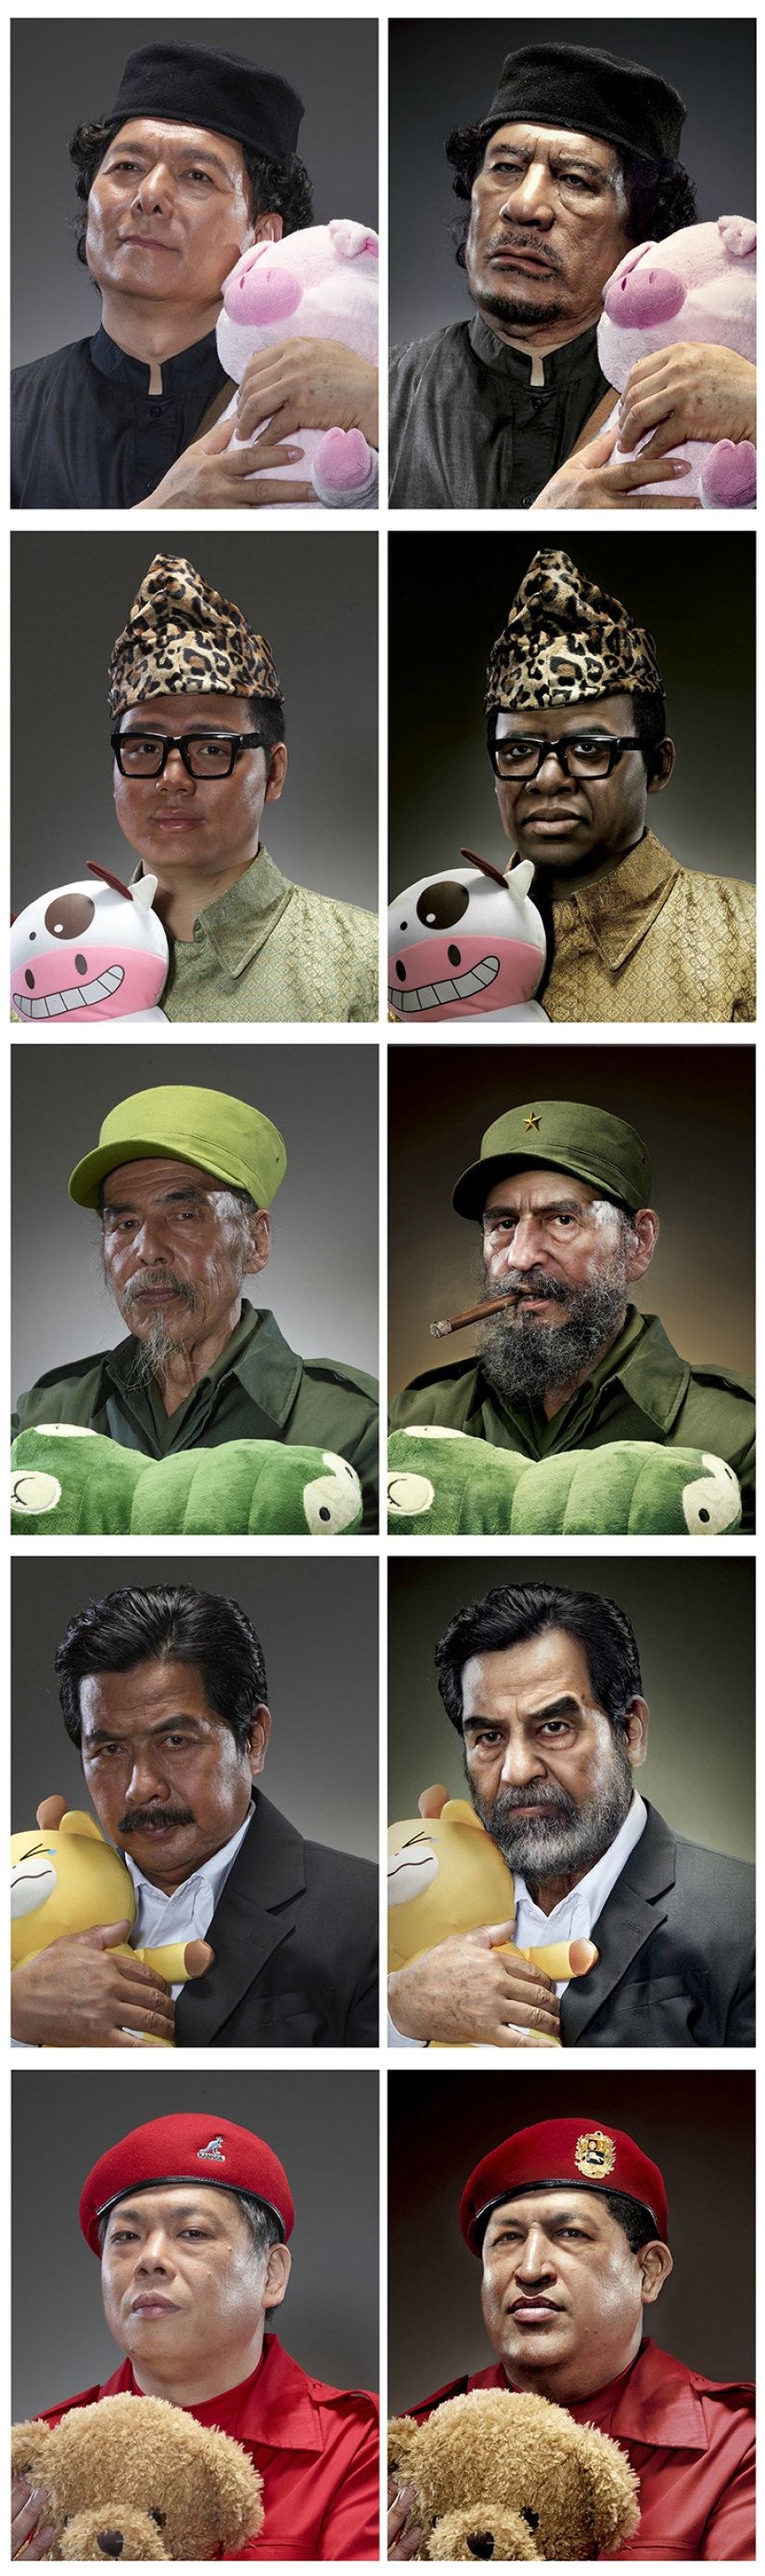 Retratos de dictadores mundiales abrazando peluches